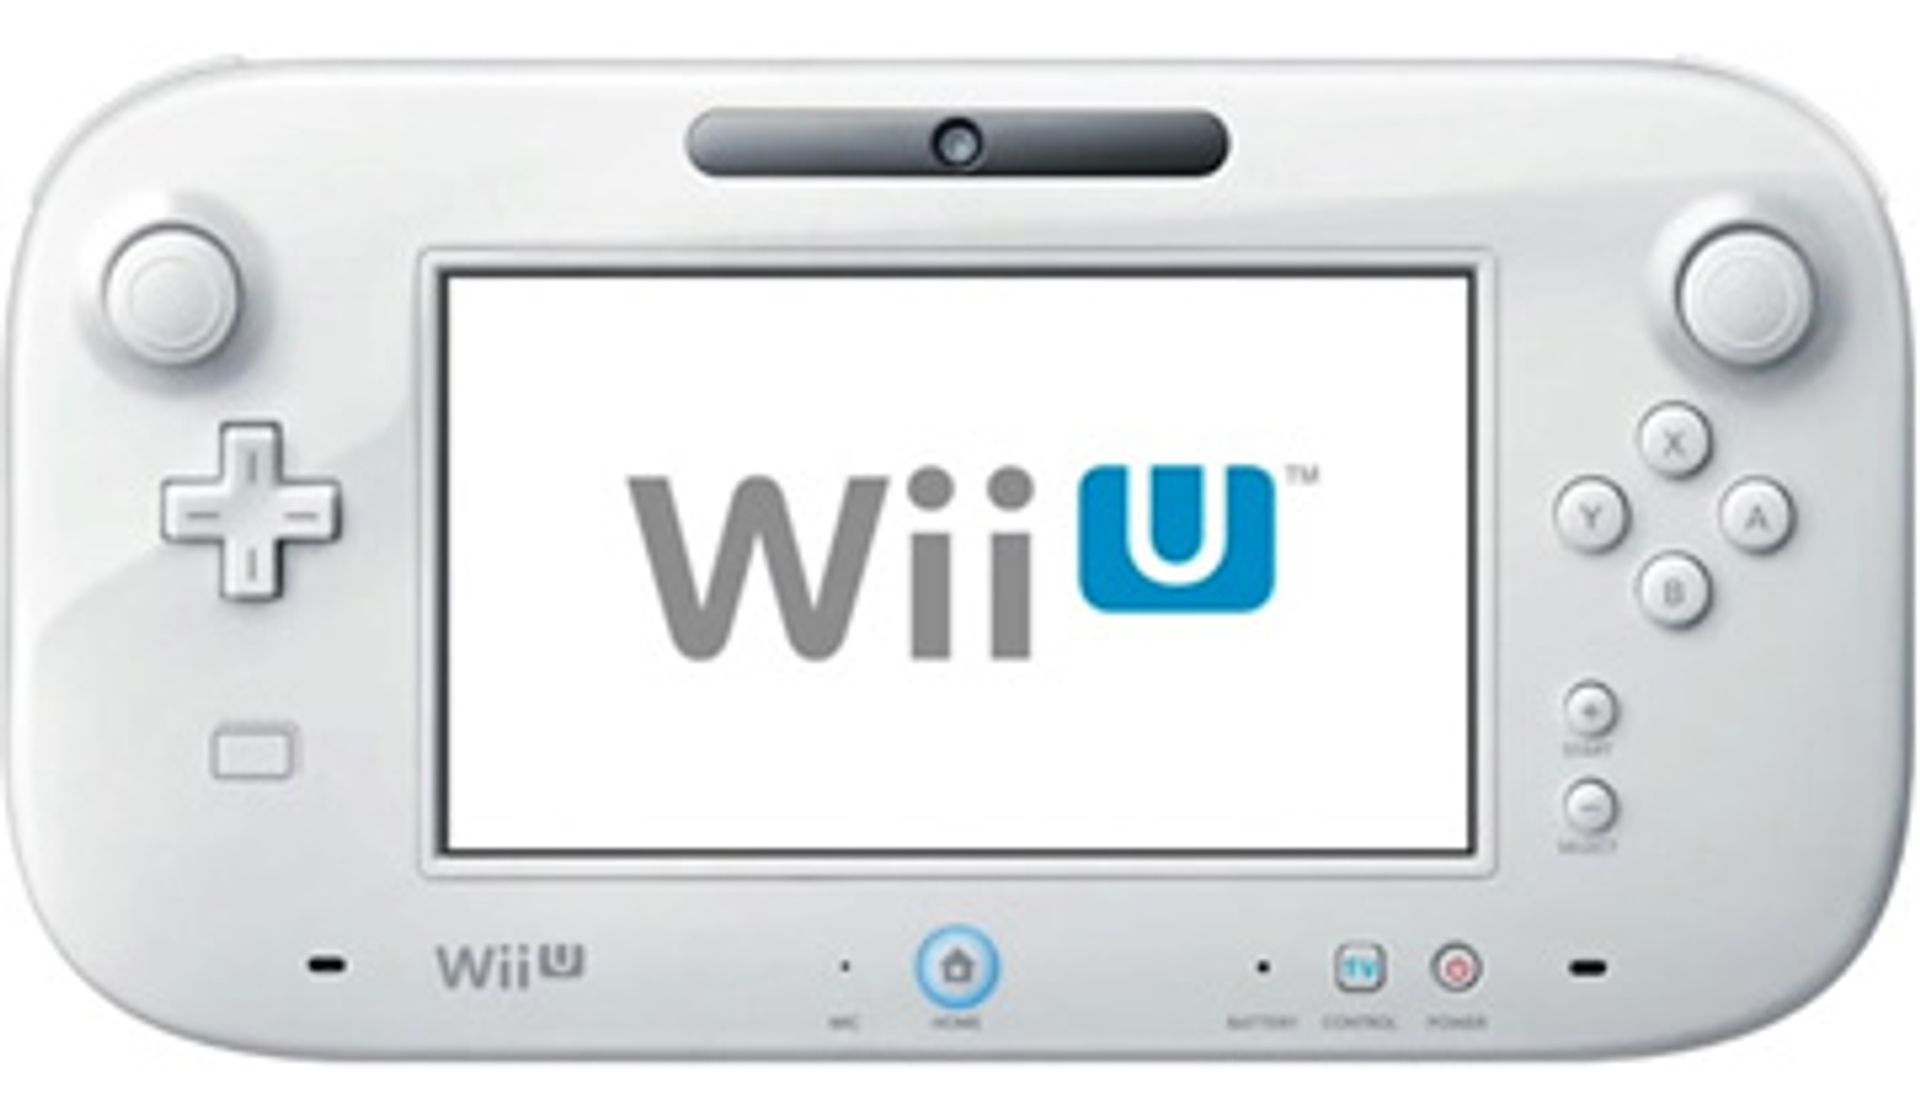 Aanstellen censuur verraad Nintendo presenteert opvolger Wii - Kassa - BNNVARA